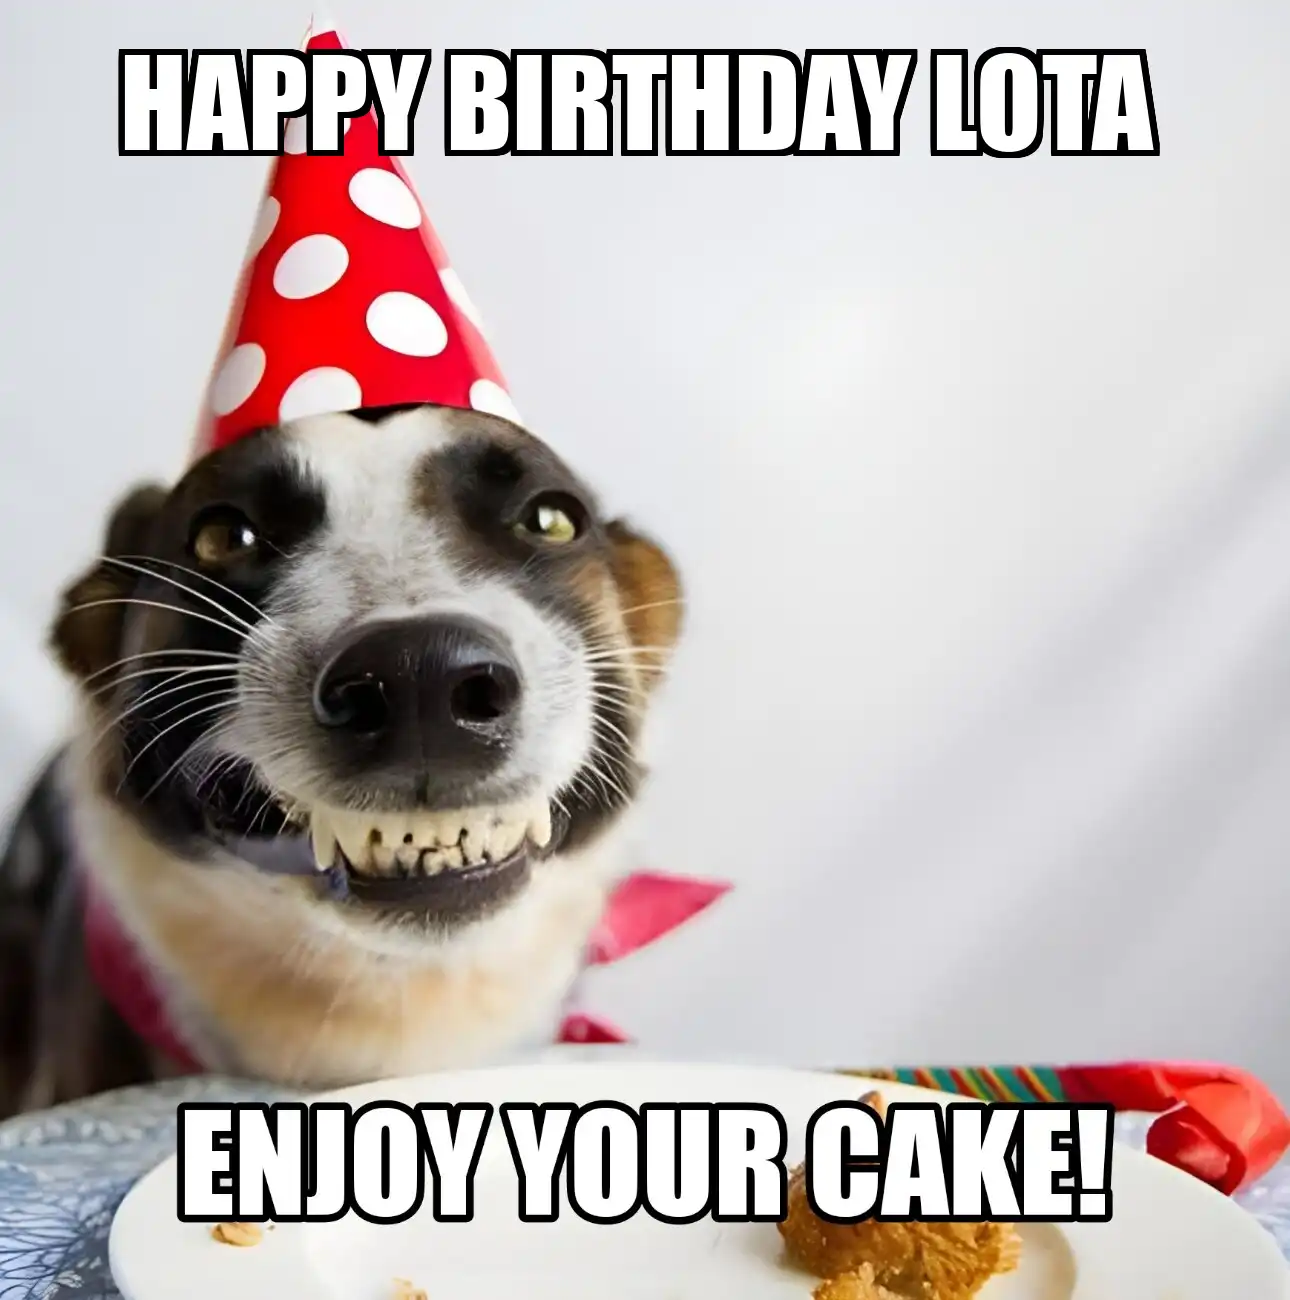 Happy Birthday Lota Enjoy Your Cake Dog Meme